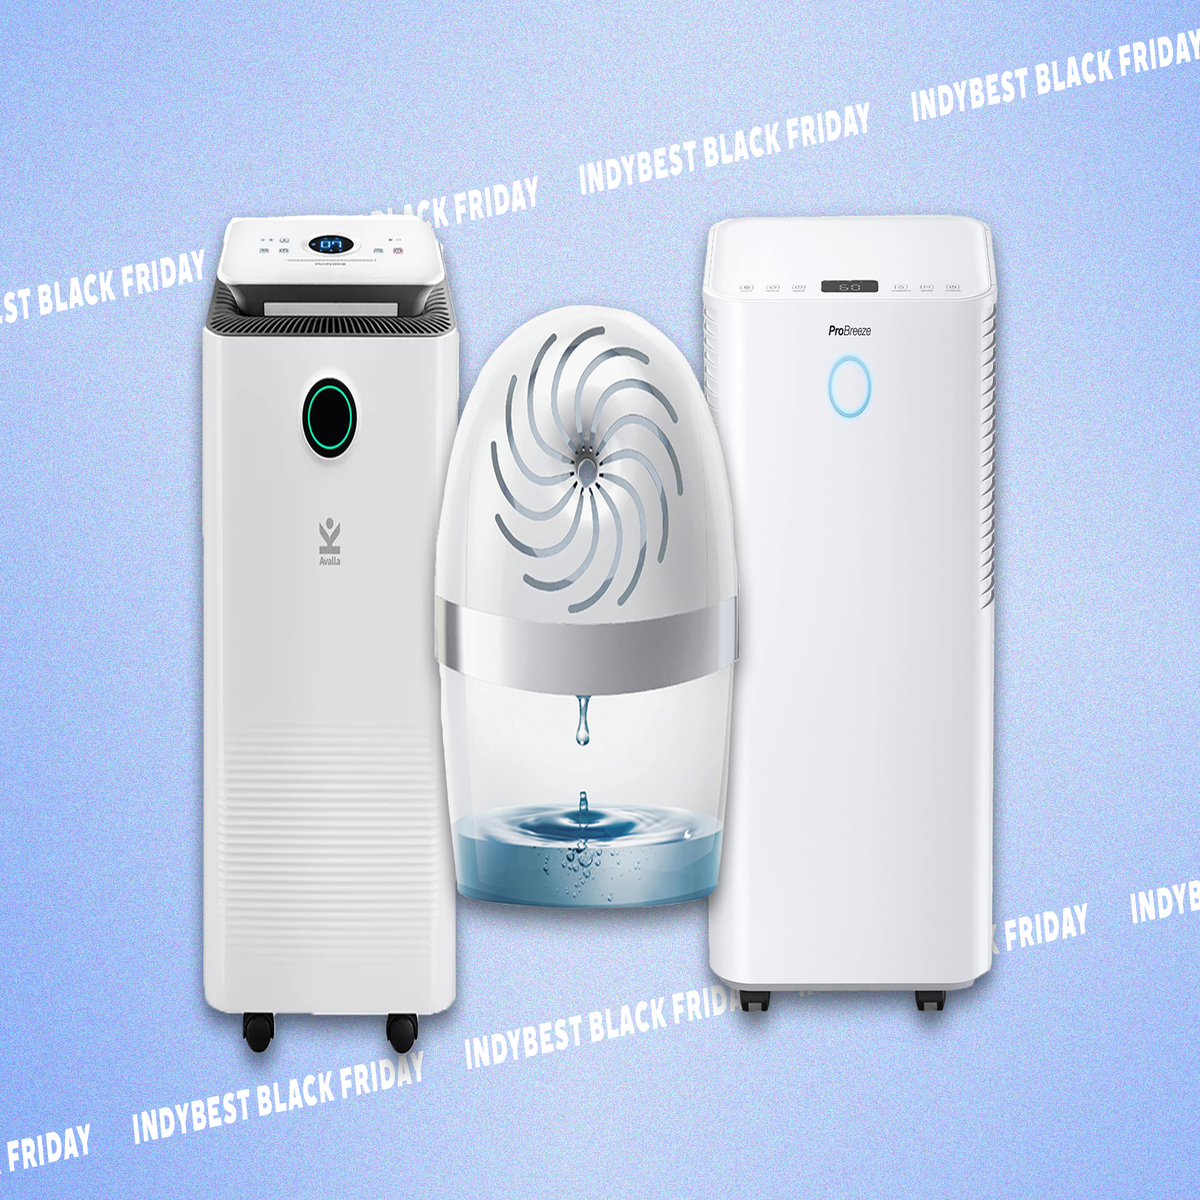 Pro Breeze Dehumidifier 10L, TV & Home Appliances, Air Purifiers